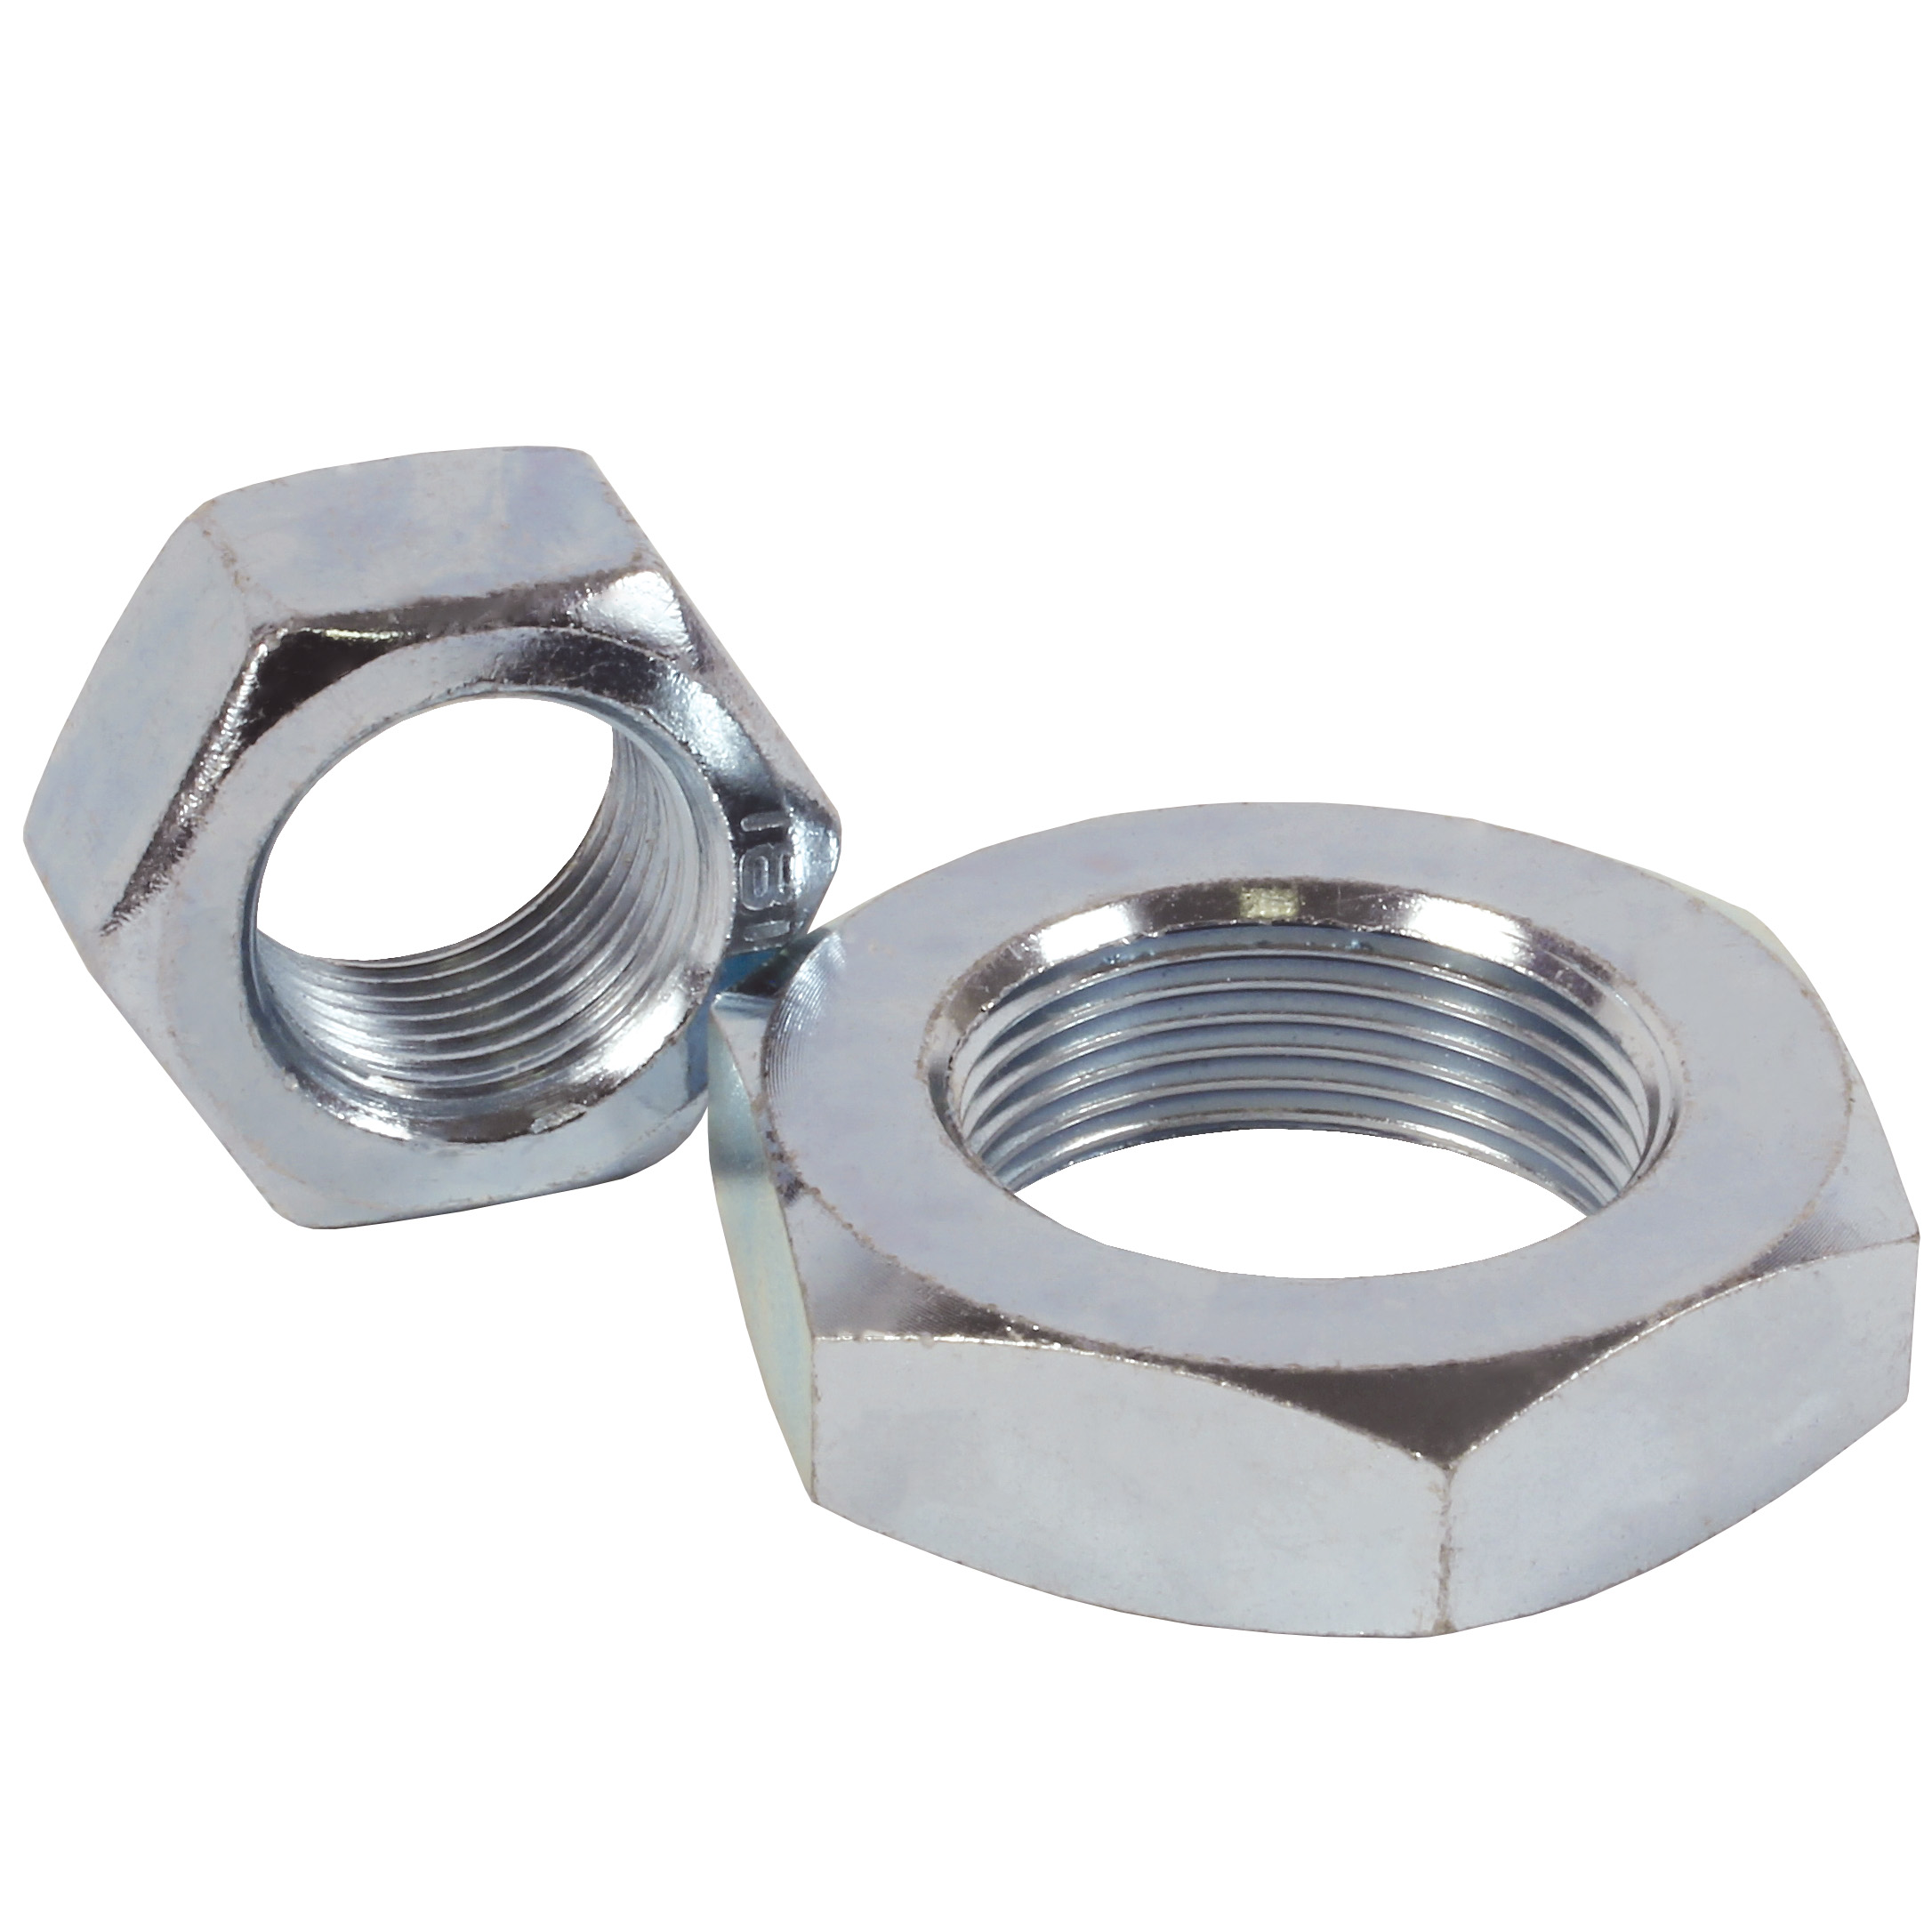 Adjusting nut - Fine thread - Max. 90 000N - Steel